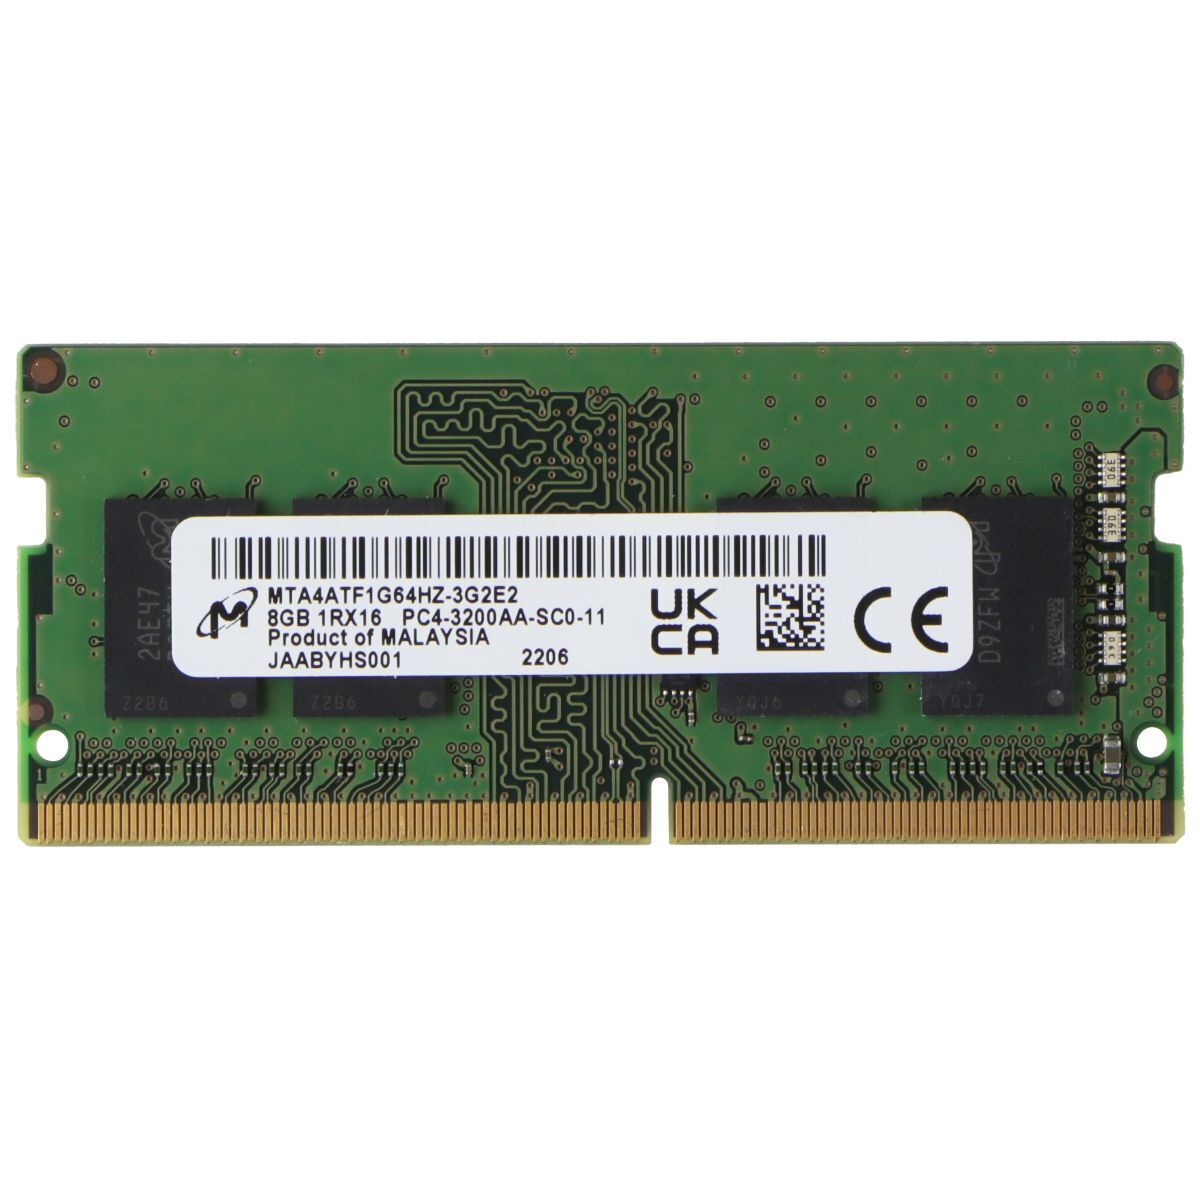 Micron (8GB) DDR4 1Rx16 (PC4-3200AA) Laptop RAM Memory MTA4ATF1G64HZ-3G2E2